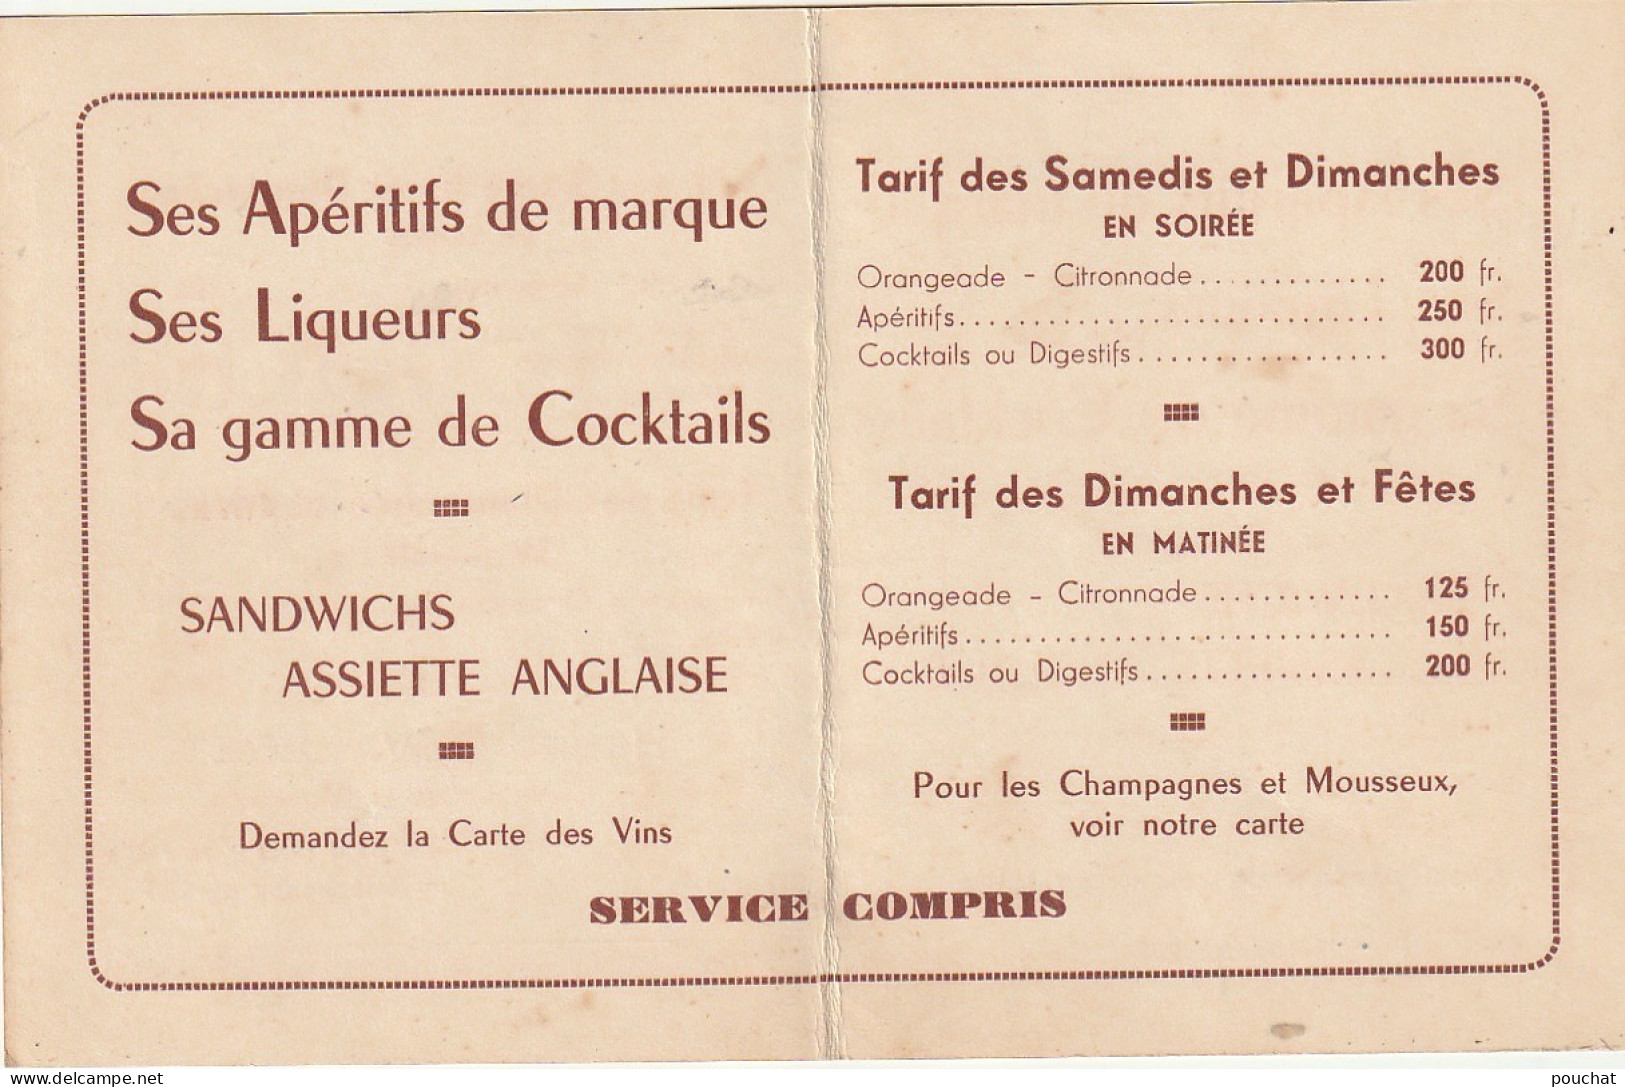 Z+ 25-(82) CABARET " LE ZODIAQUE "- DEPLIANT 2 VOLETS , TARIFS - INVITATION SOIREE DE GALA - H. DEVALBRET , DIRECTEUR - Visiting Cards